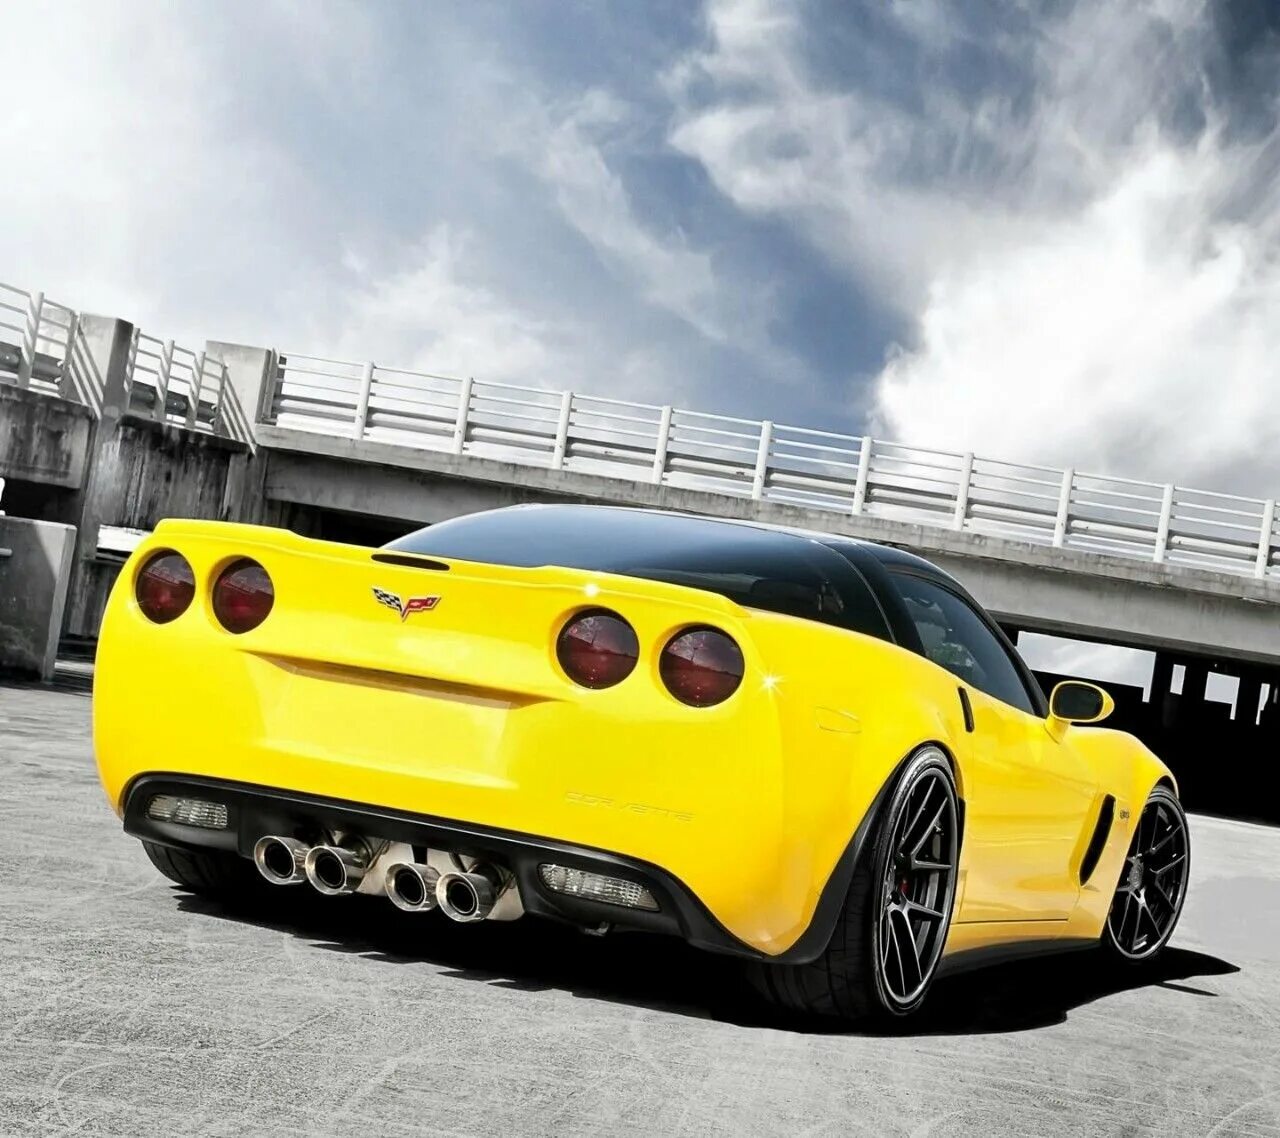 Мажор тачка. Chevrolet Corvette c6 Yellow. Шевроле Корвет с6 желтый. Yellow Chevrolet Corvette zr1. Corvette c6 zr1.